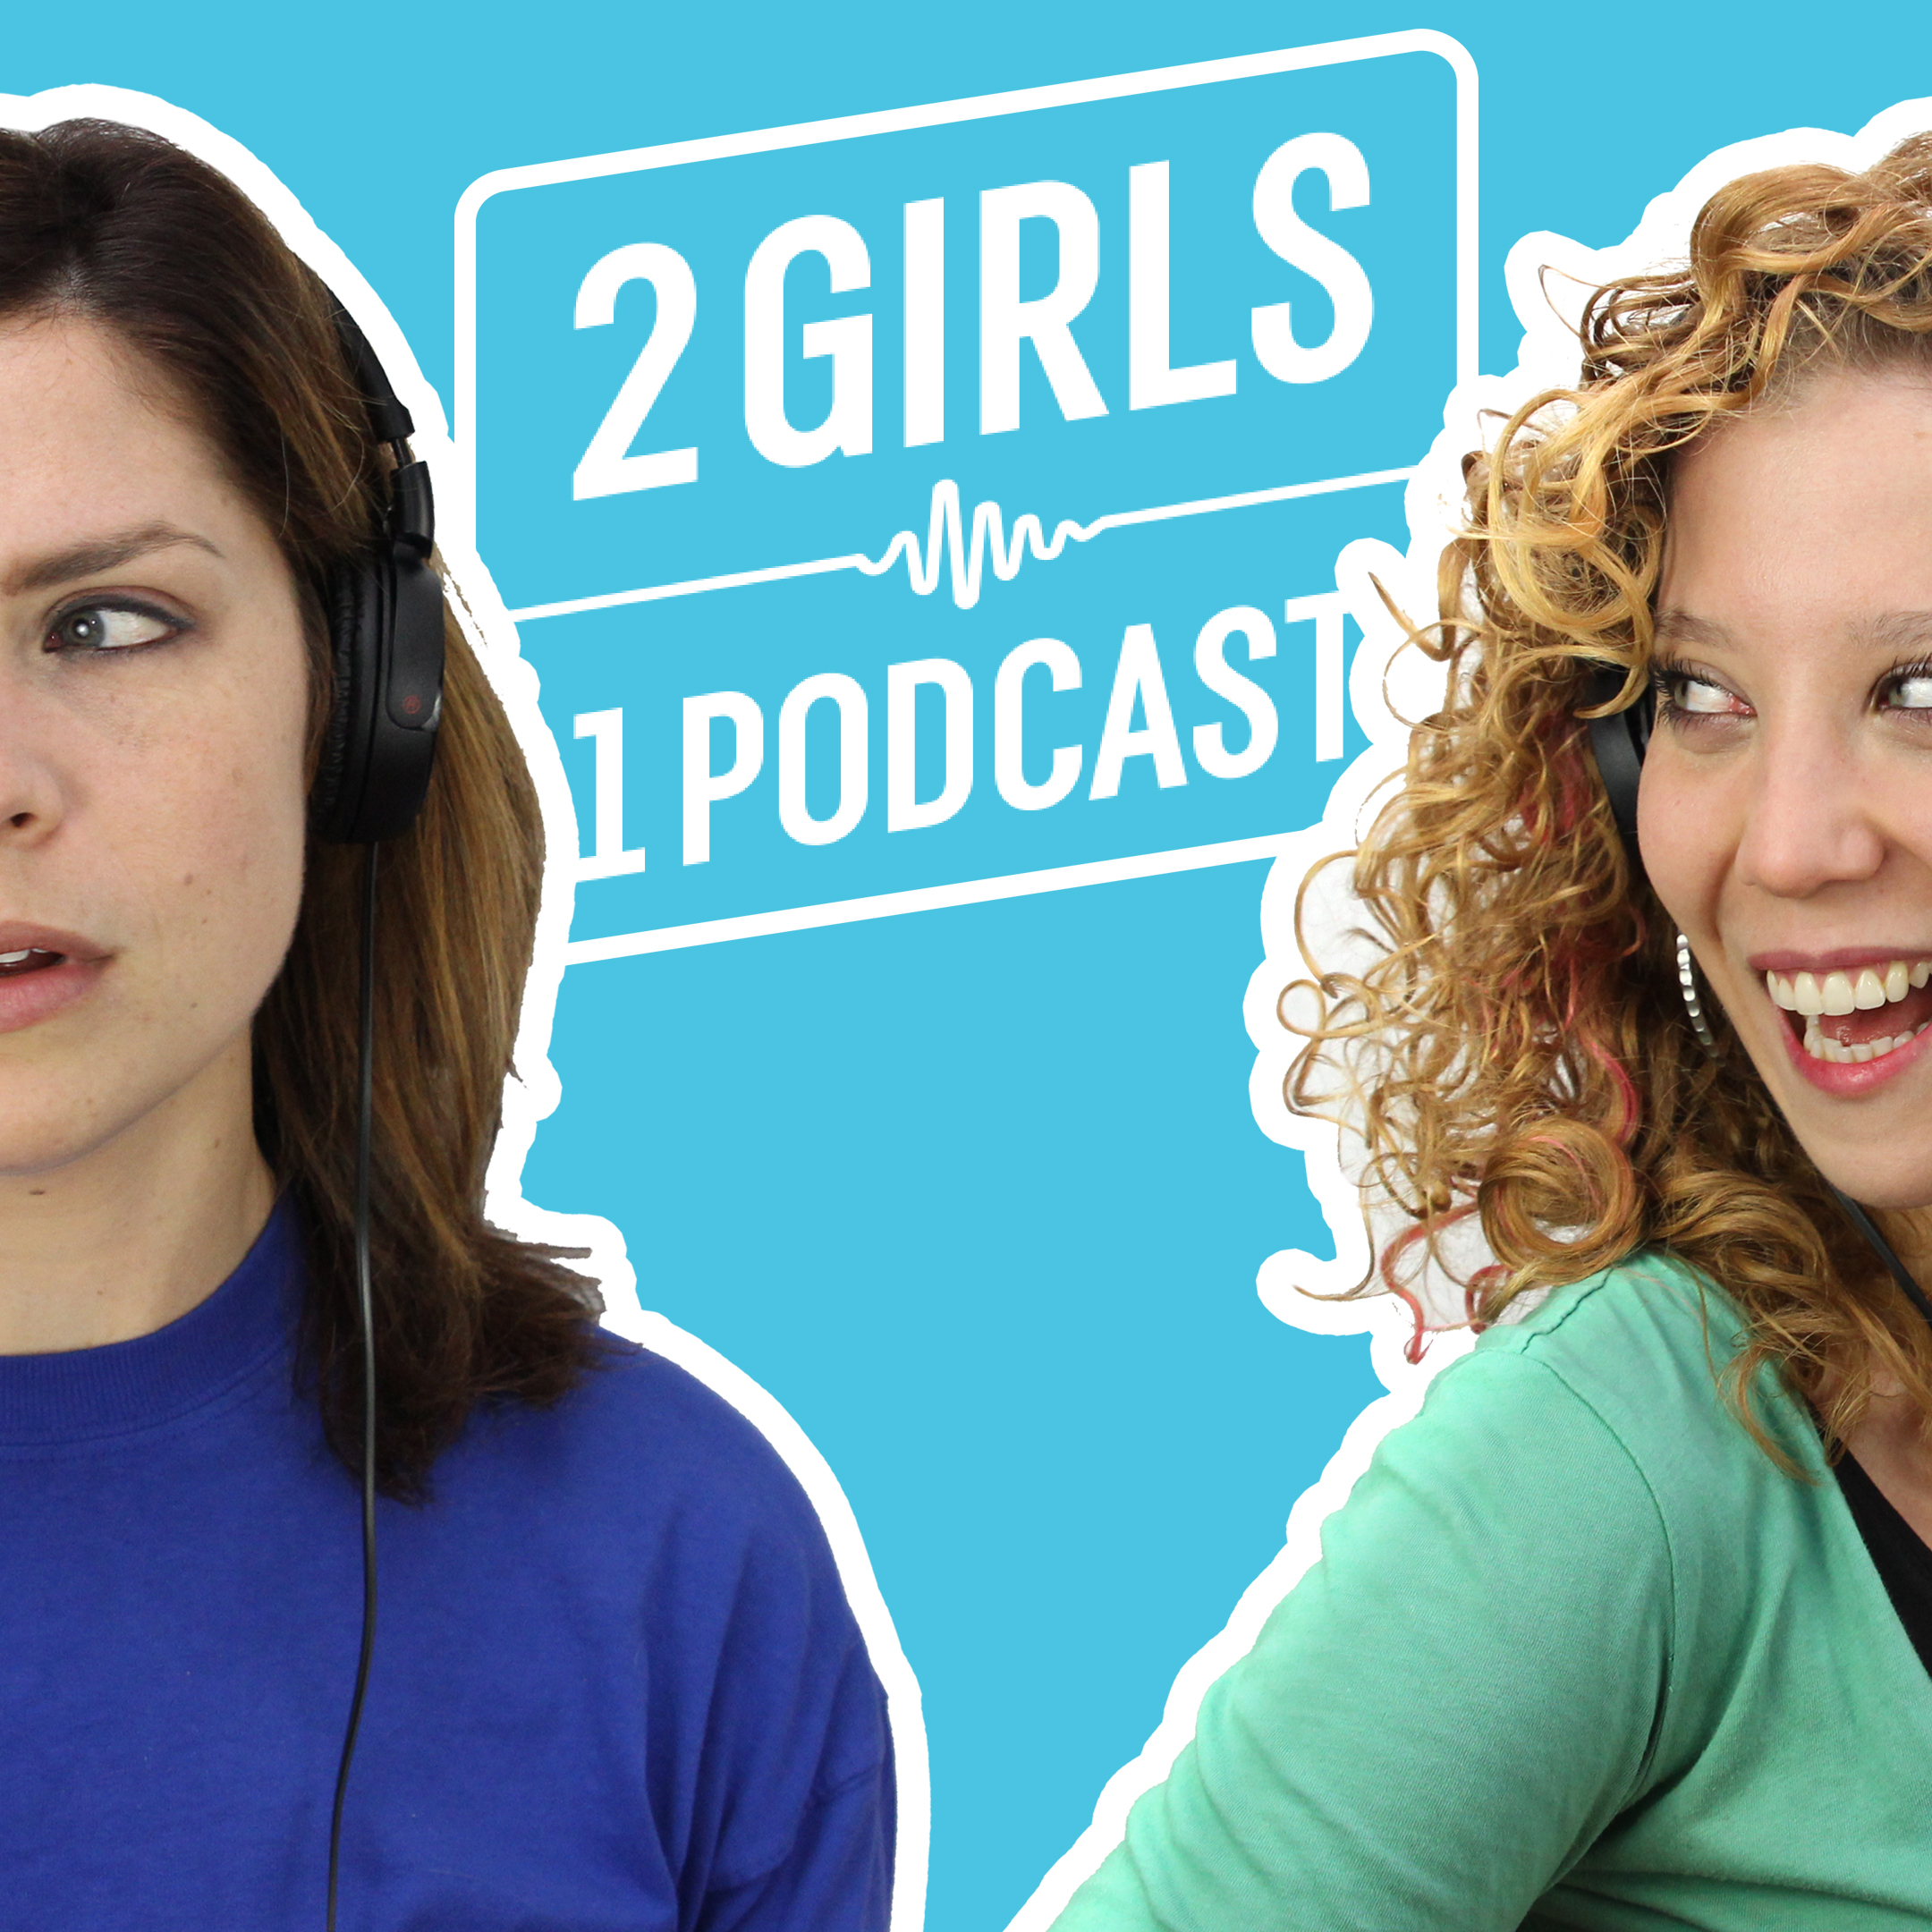 2 Girls 1 Podcast | Podbay